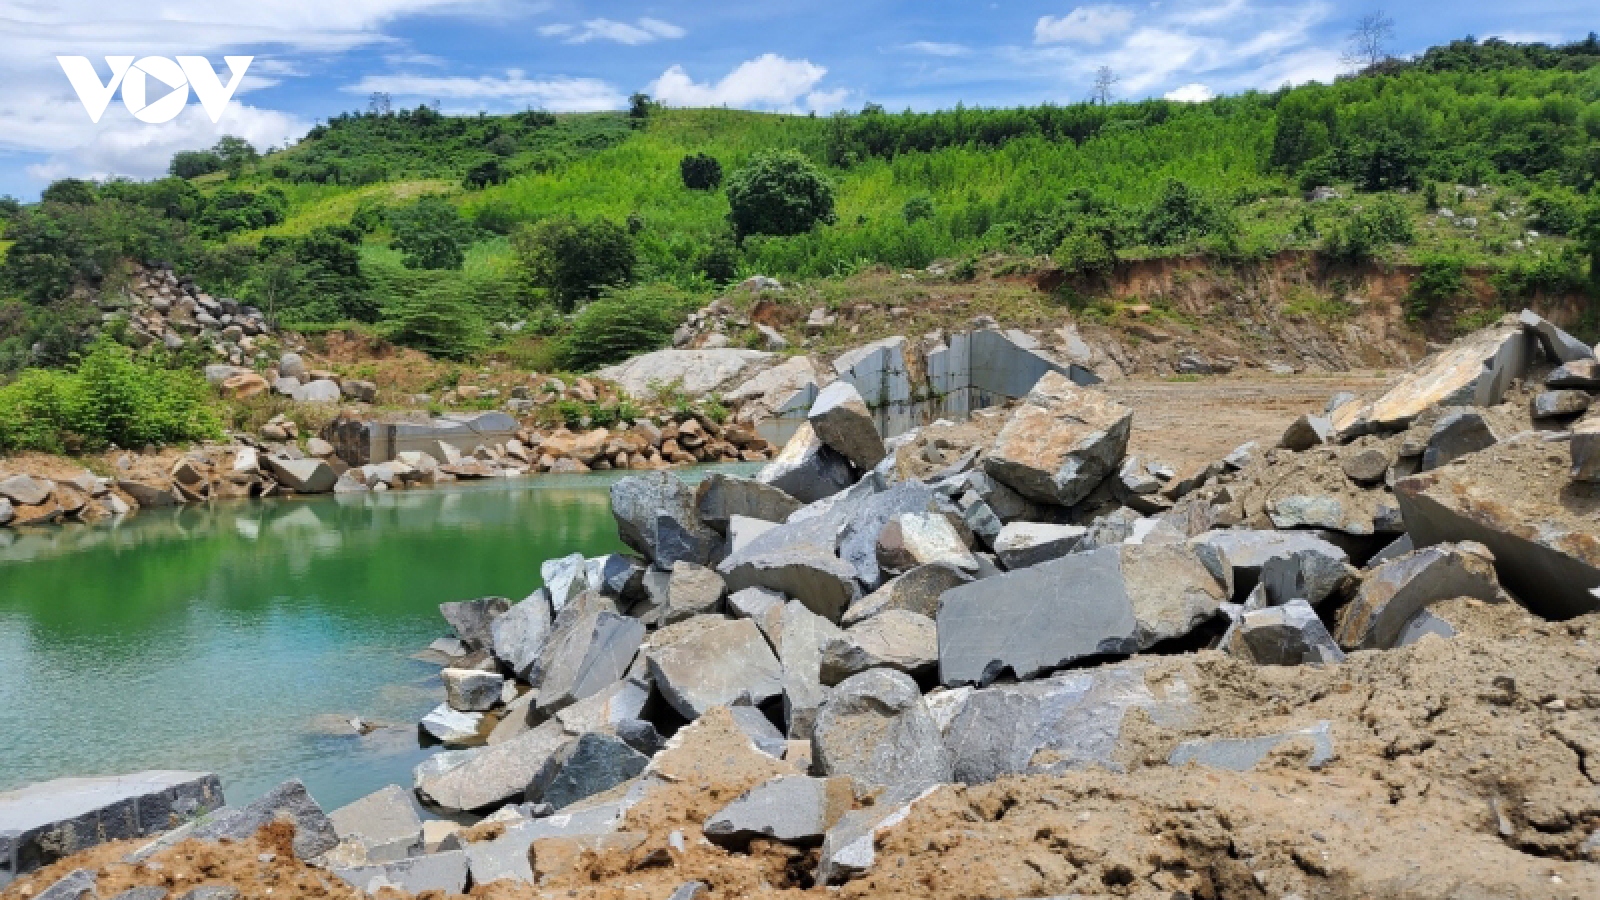 Phú Yên xử phạt doanh nghiệp khai thác đá không phép 1 tỉ đồng